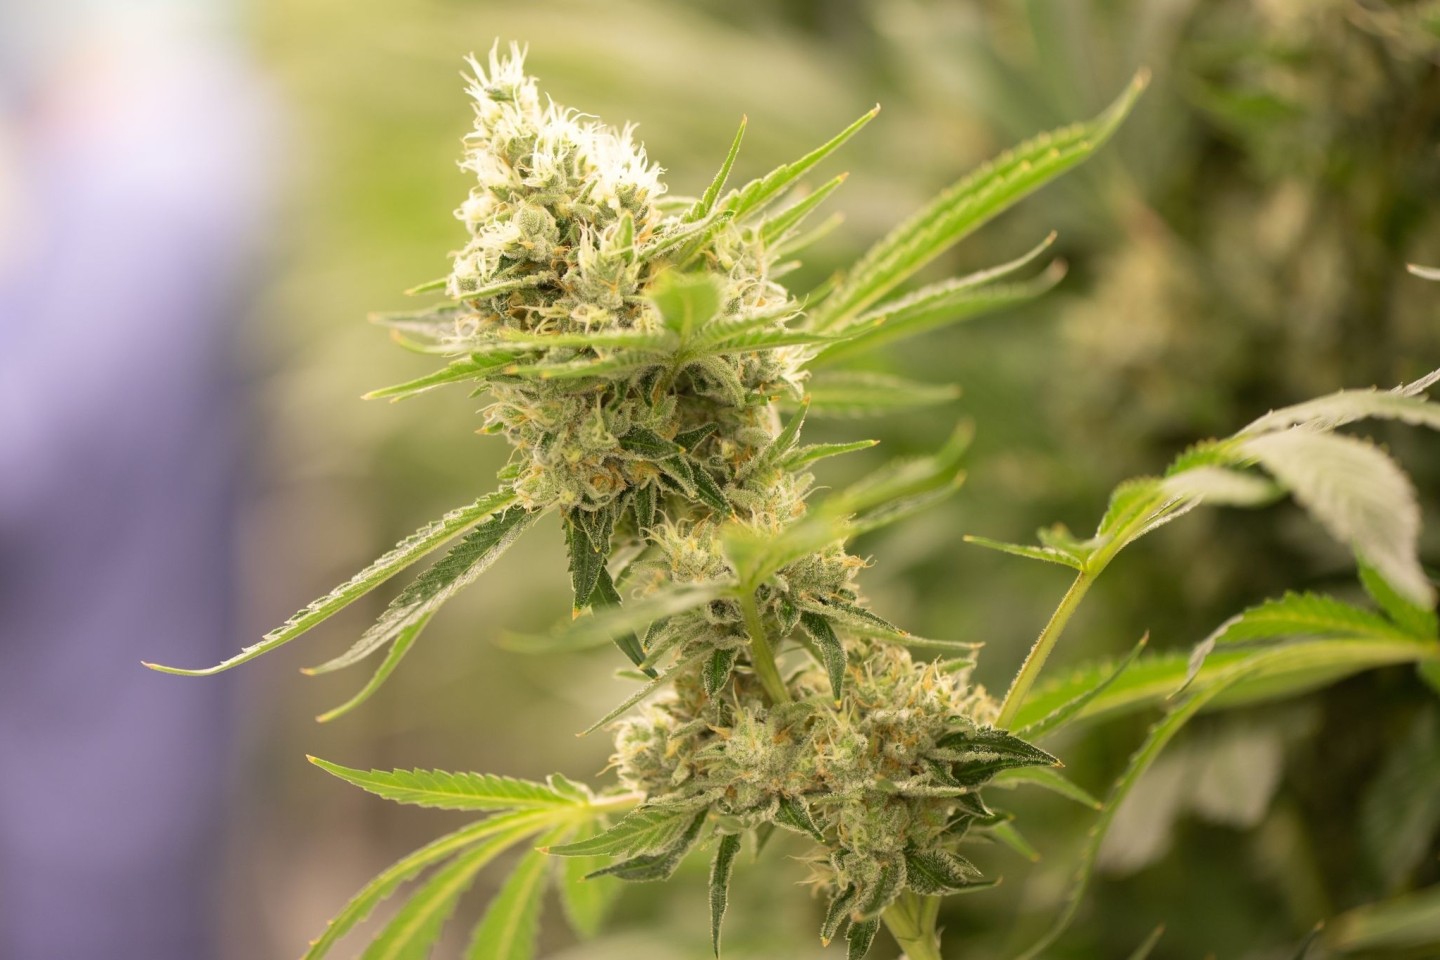 Cannabispflanzen brauchen für das Wachstum besonders viel Wärme und Licht.